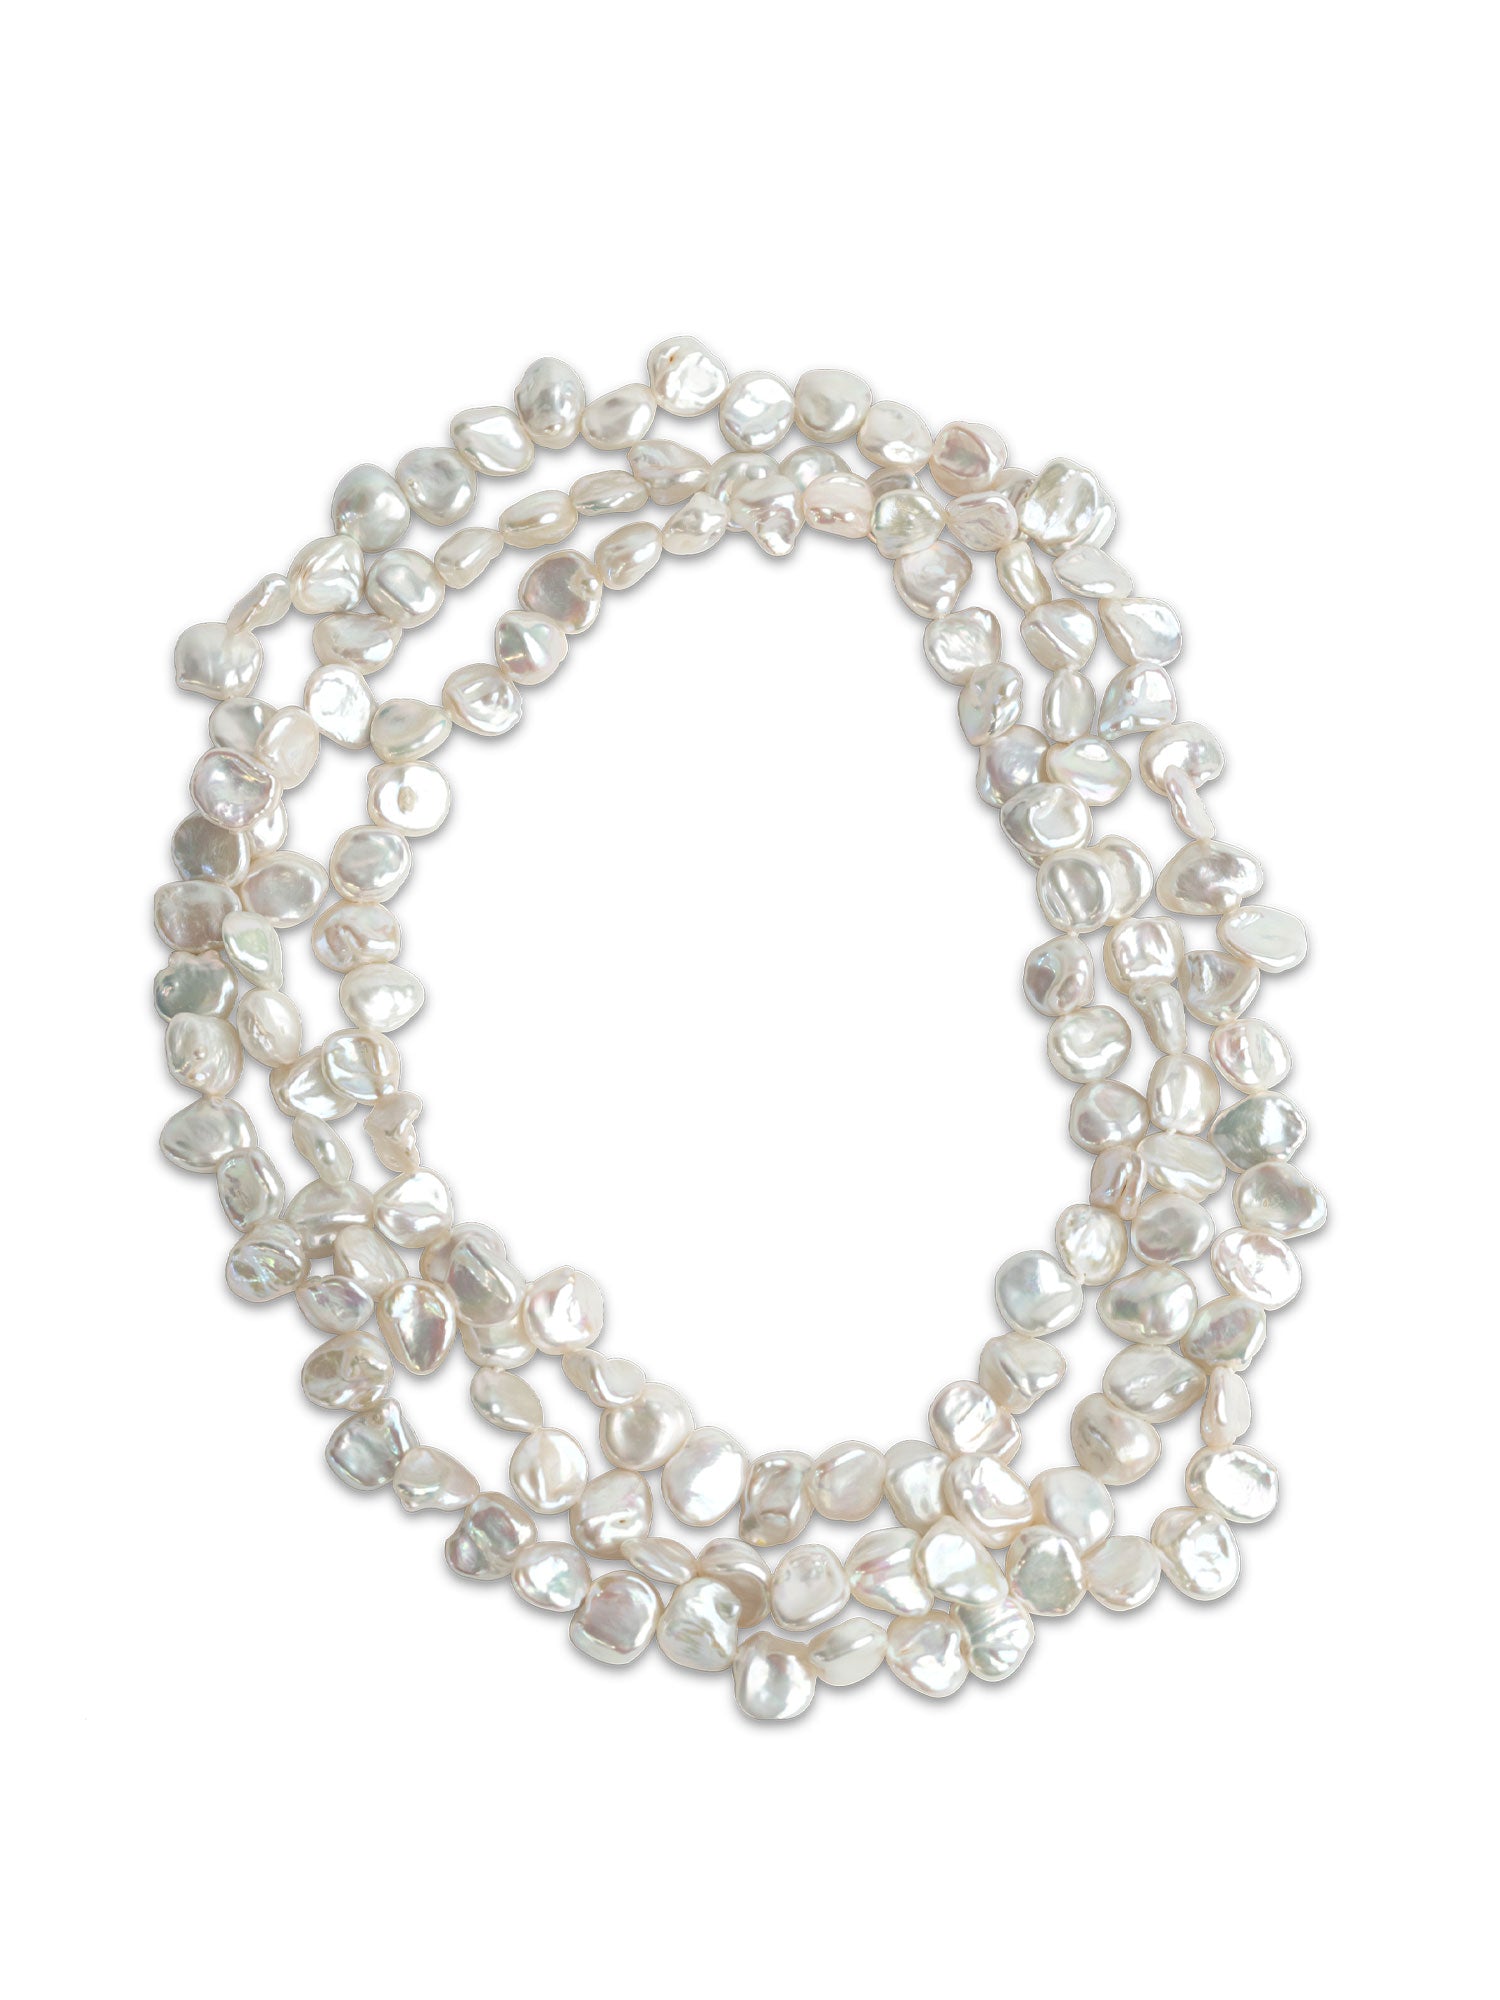 Collar de Perlas Cultivadas de Agua Dulce Barrocas Keshi de 9-11 mm, 120 cm de largo